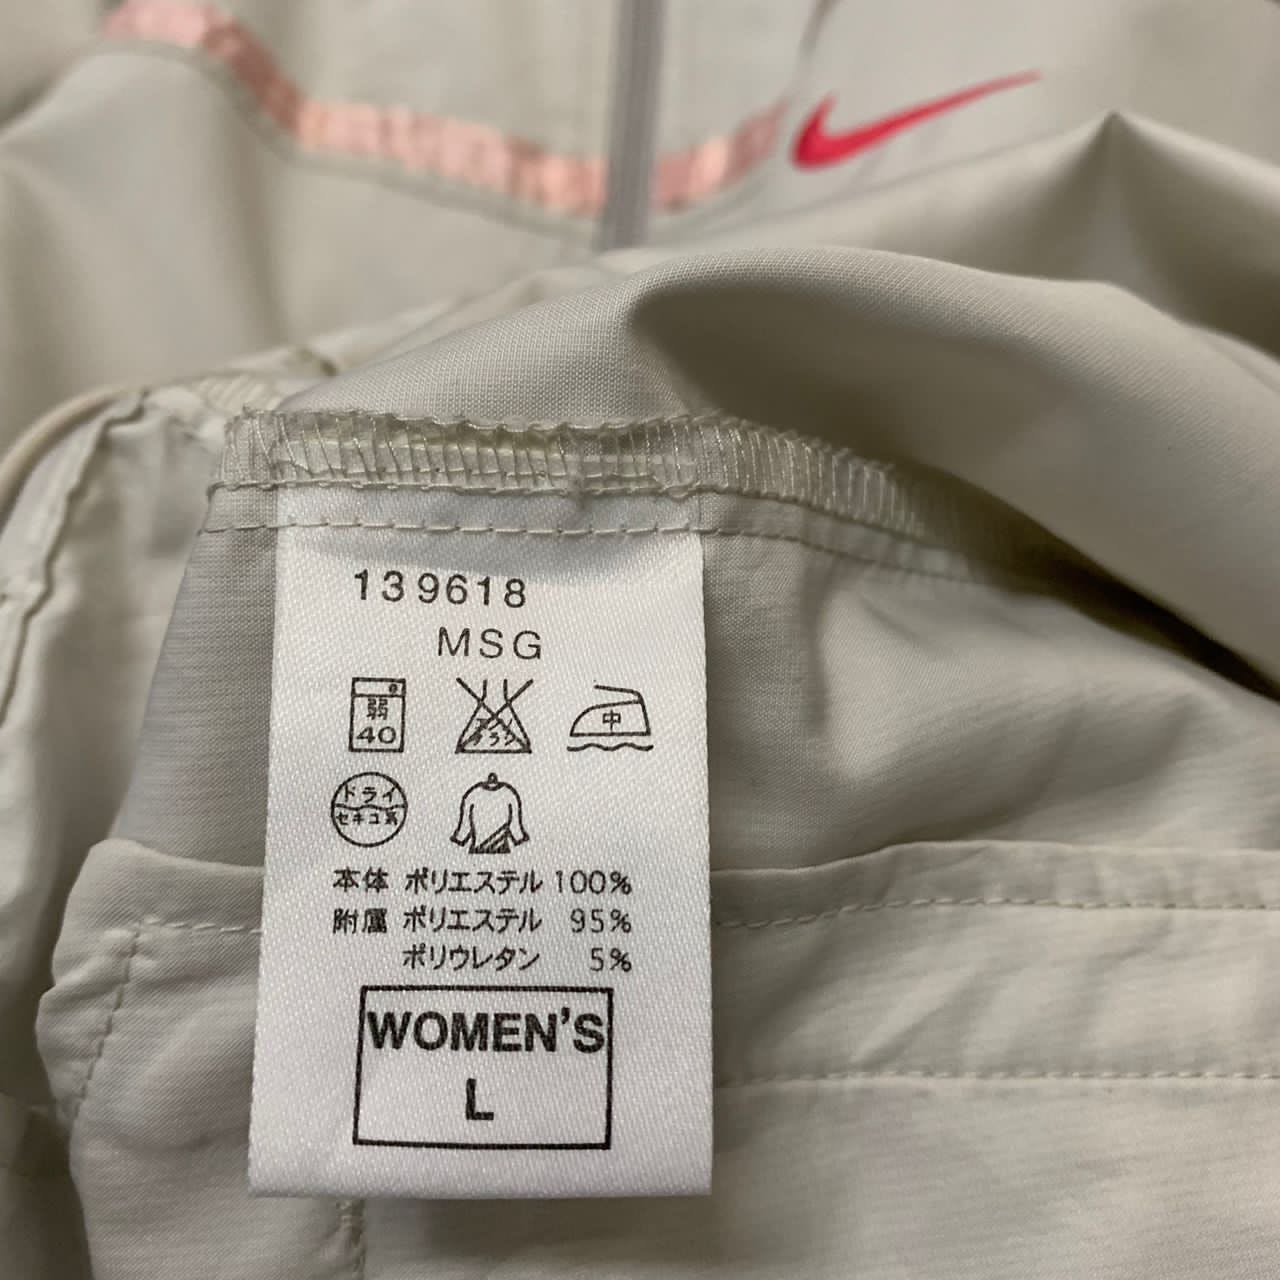 Nike jacket women’s L - 8